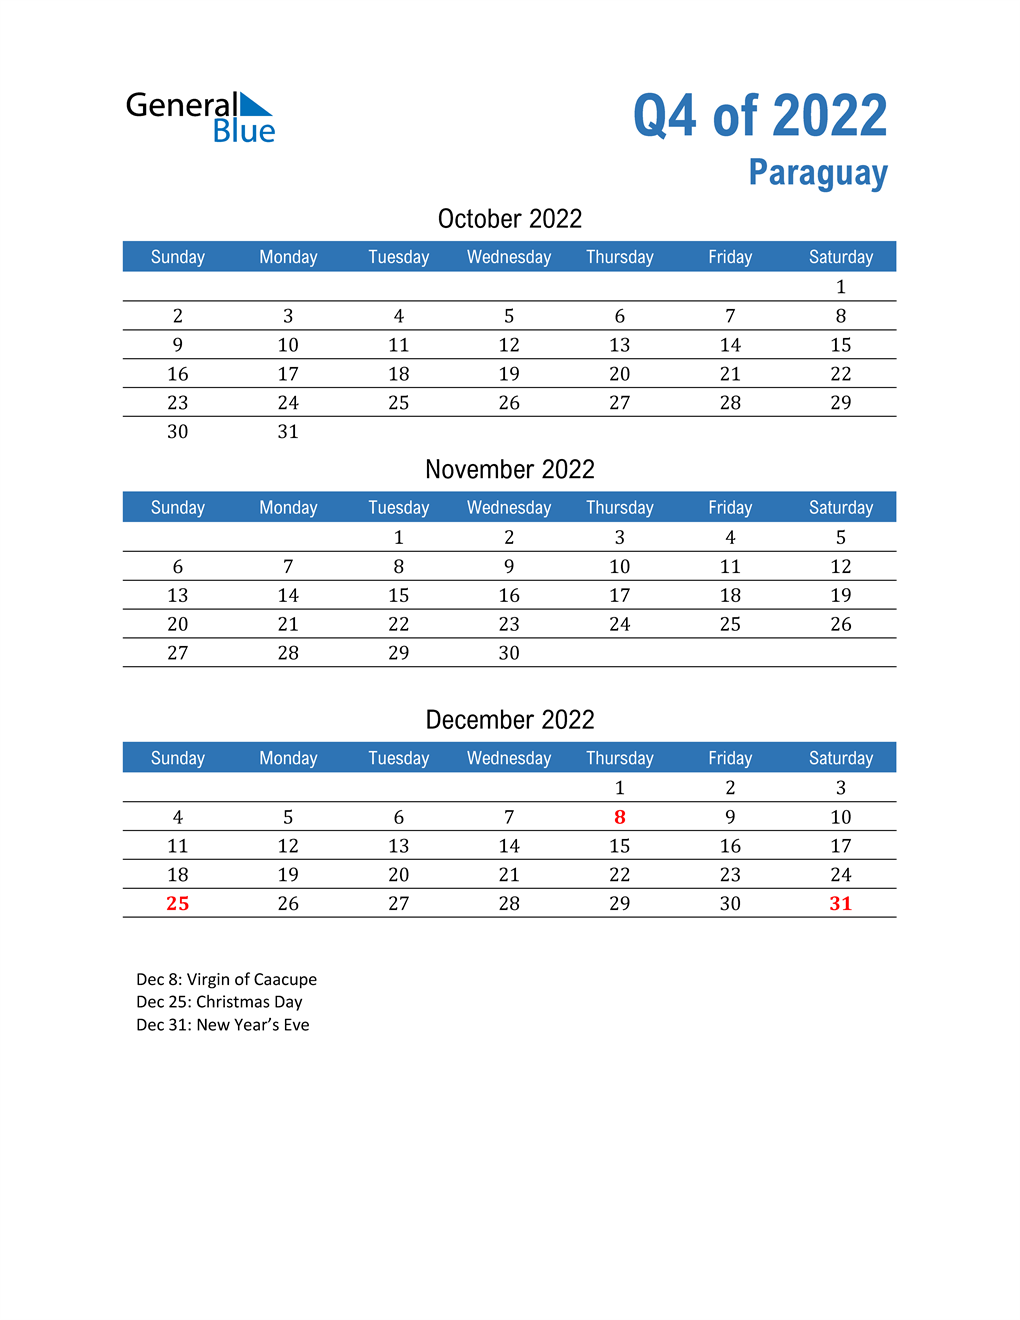  Paraguay 2022 Quarterly Calendar 